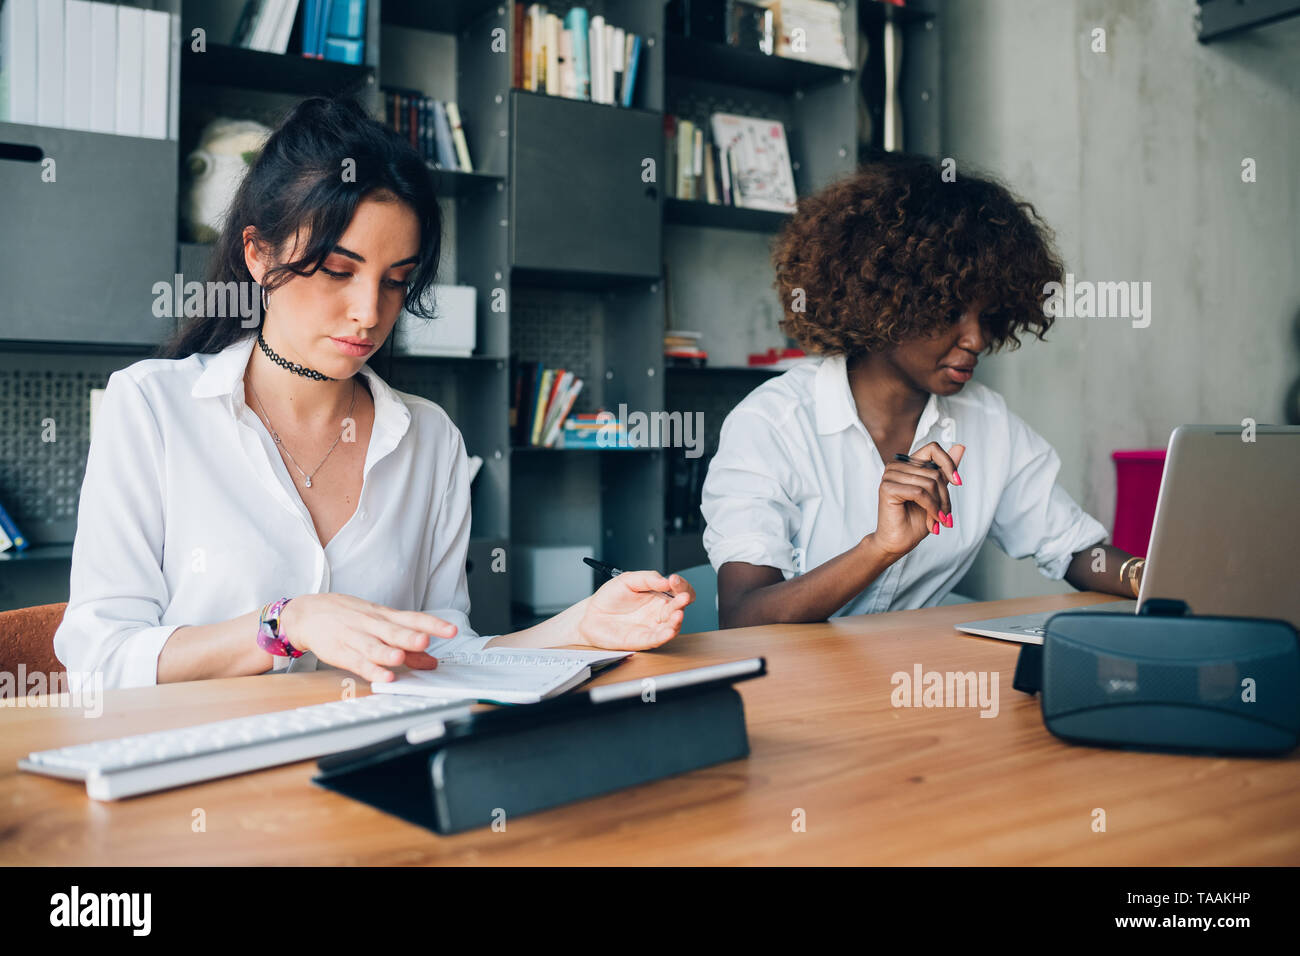 Zwei junge Multirassischen Frauen arbeiten an einem Projekt in einem Coworking office - Einfallsreich, Innovation, Konzentration Stockfoto